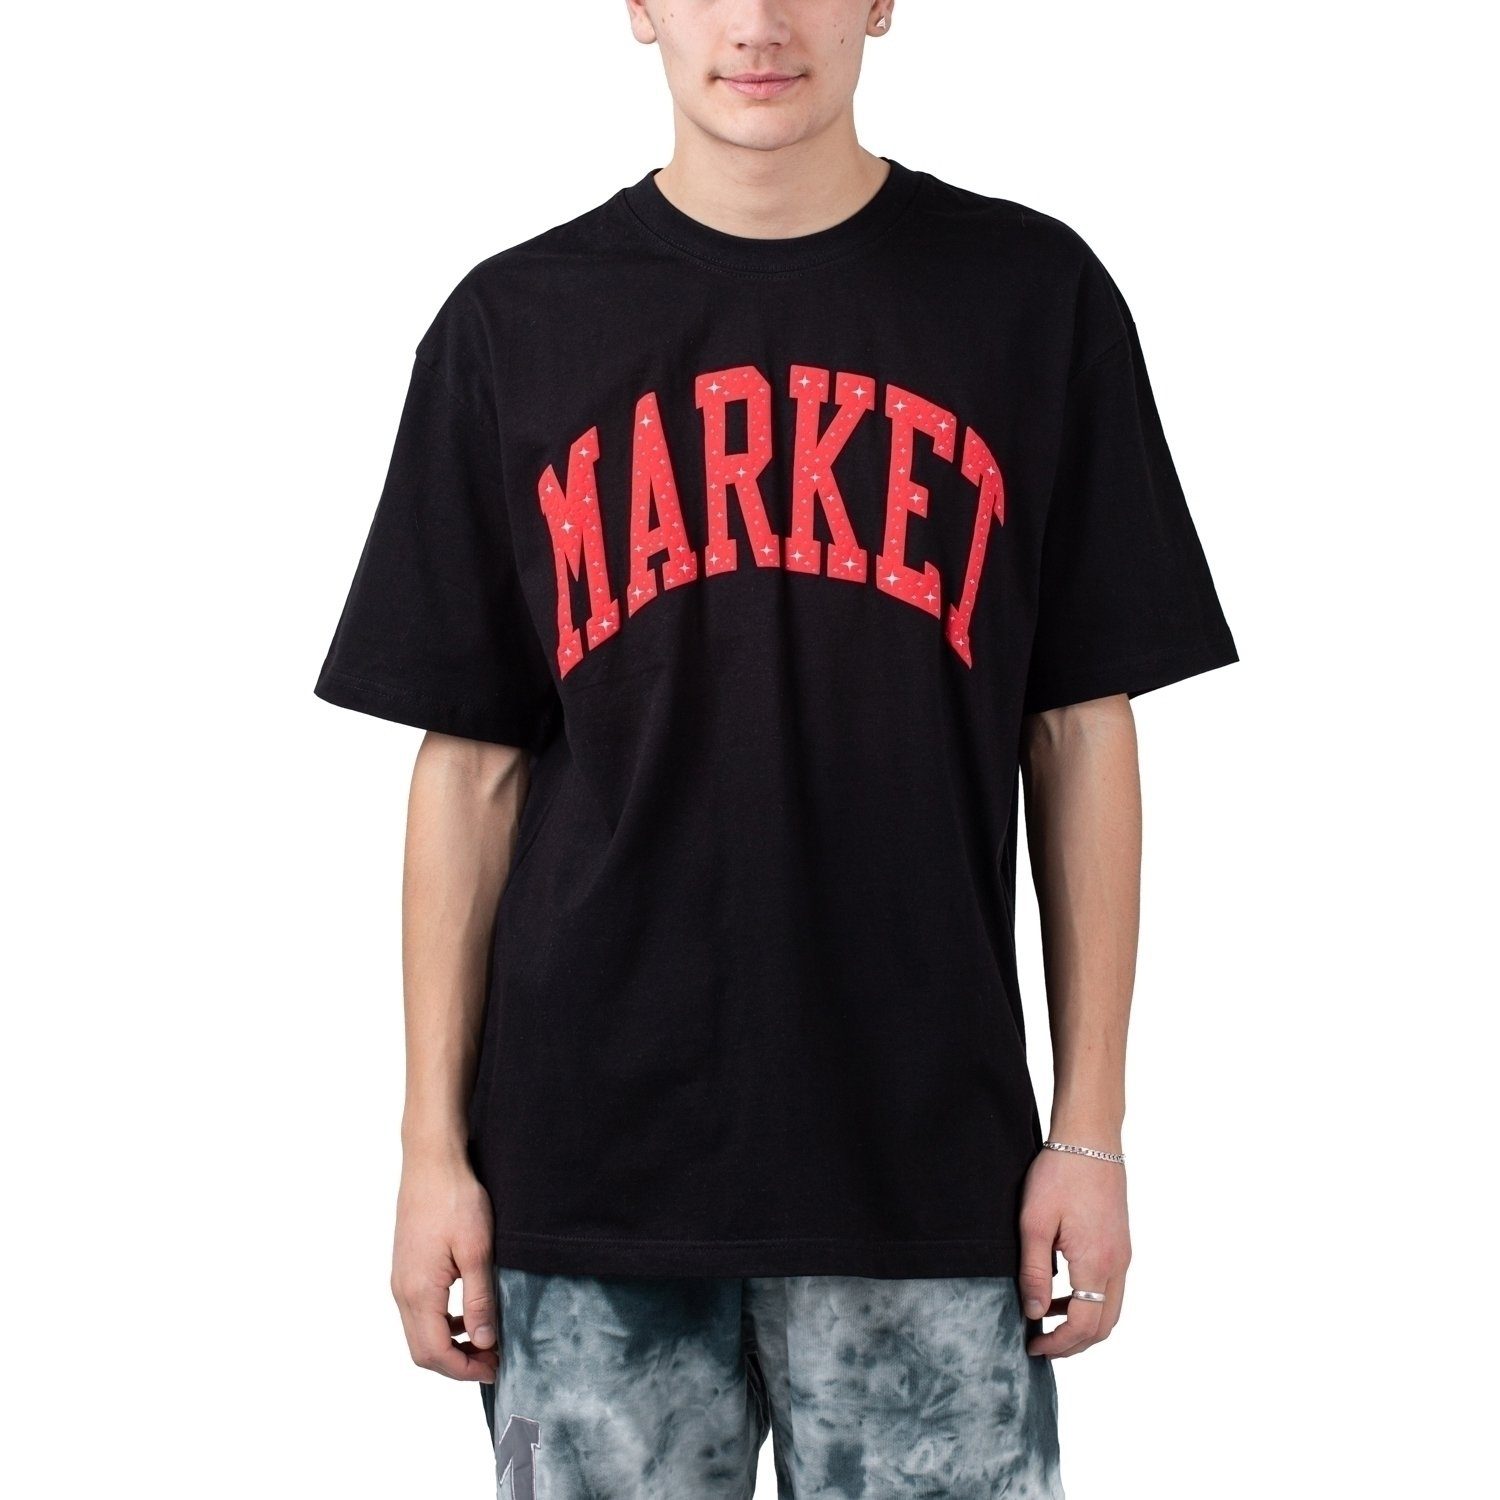 Market T-Shirt Market Arc Puff Tee